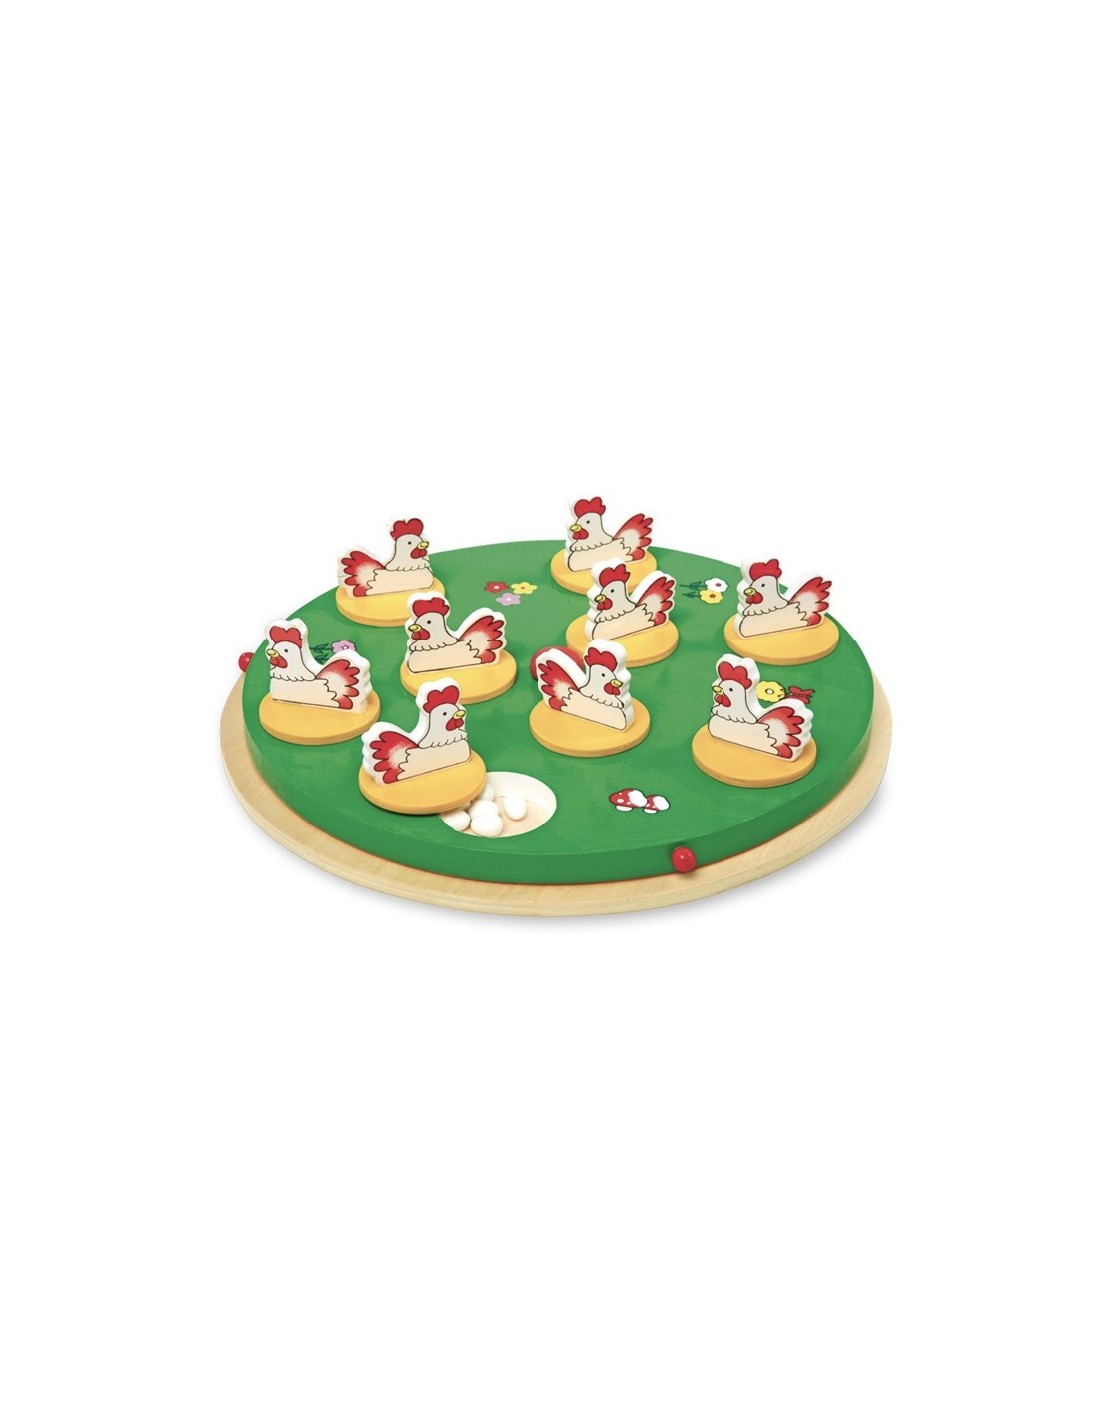 Joc de memòria 2-5 jugadors buscar el 5è ou joc de taula al tauler de fusta amb figures de gallines